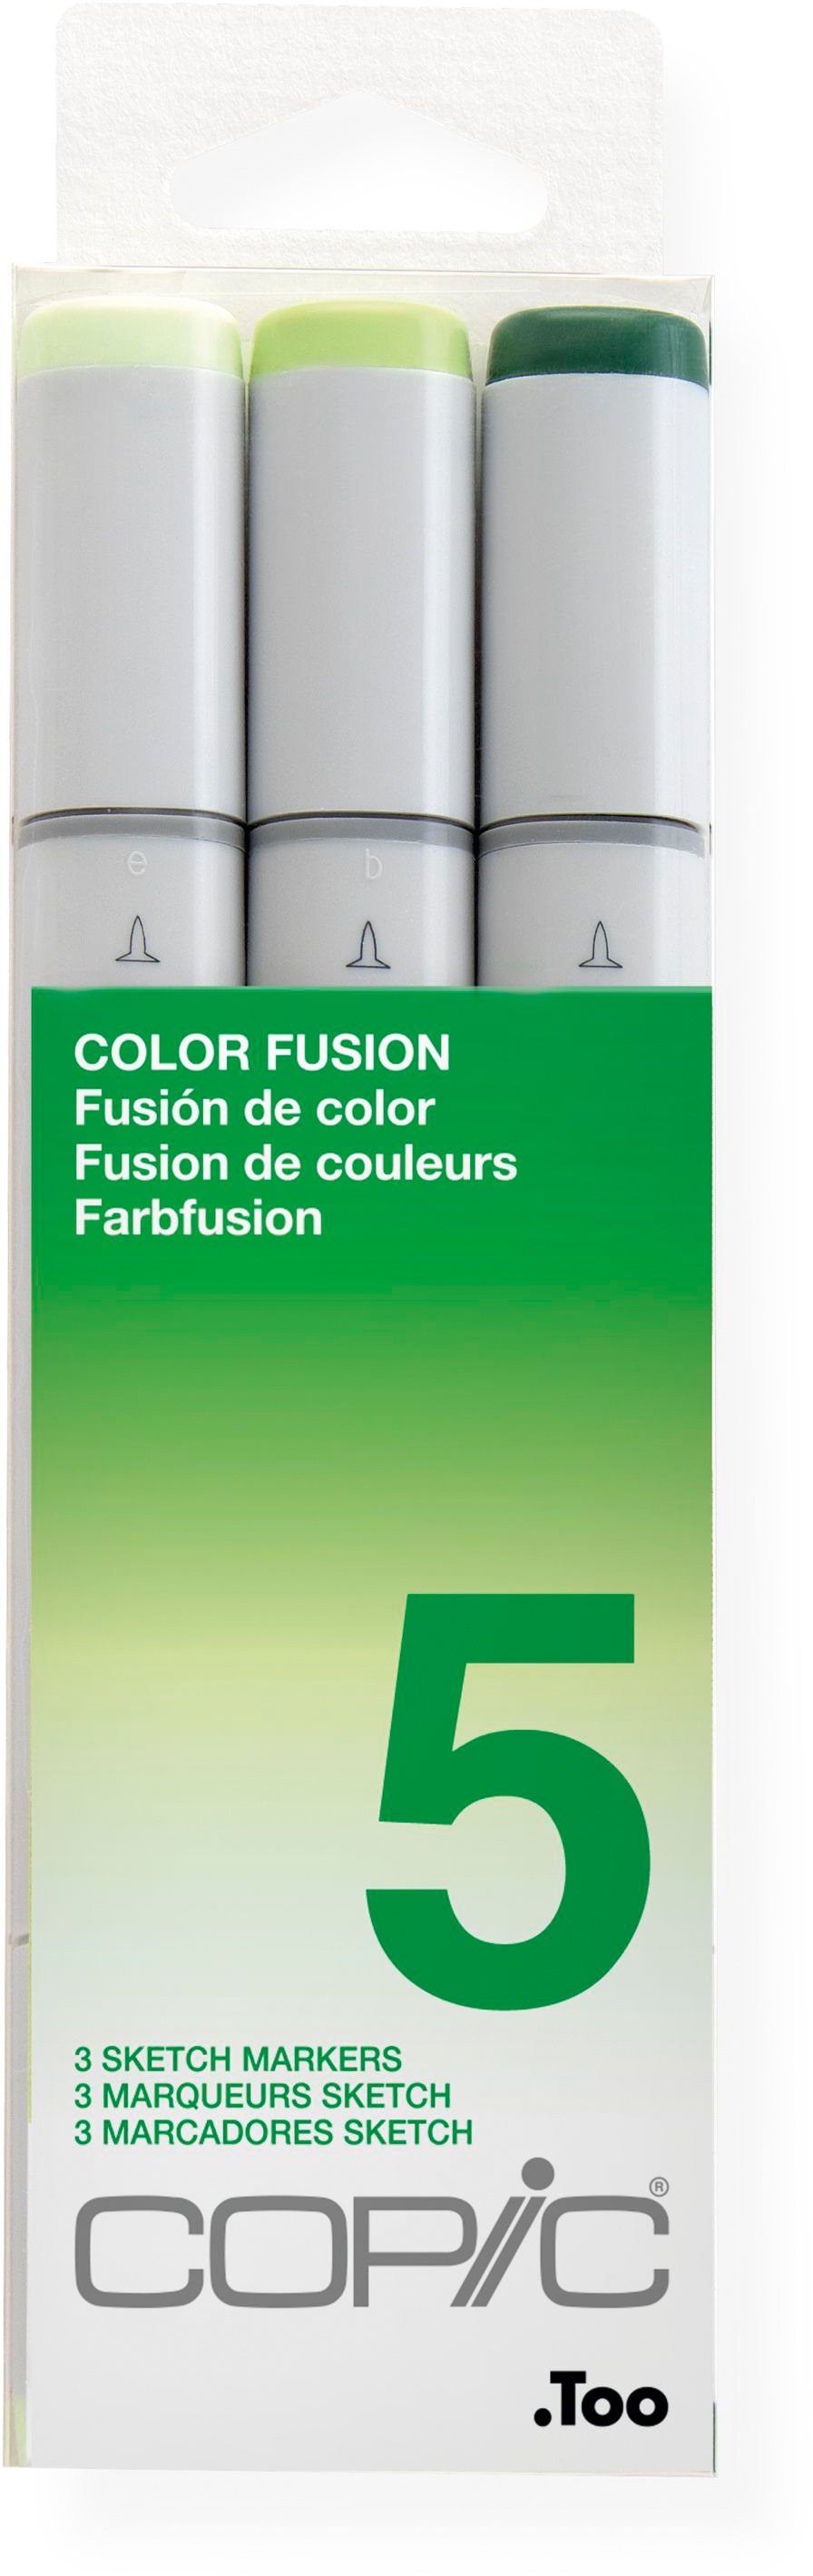 COPIC Marker Sketch 21075655 Set Color Fusion 5, 3 pcs.